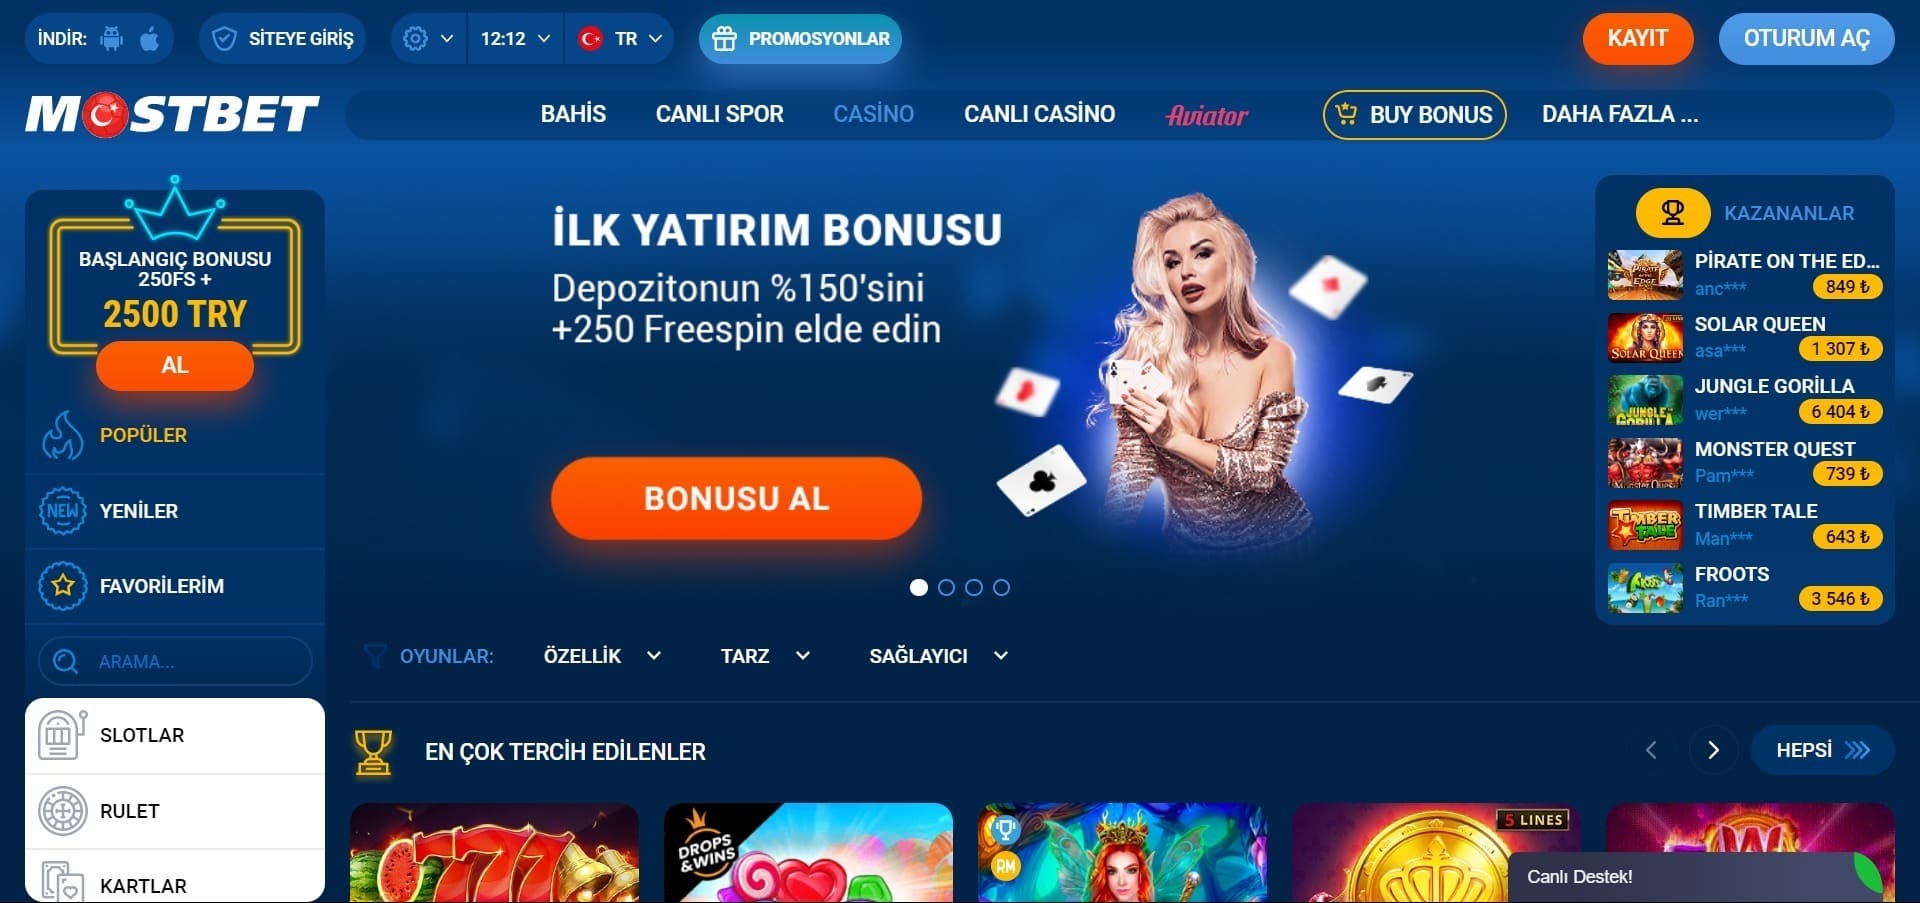 Mostbet Casino'nun resmi web sitesi